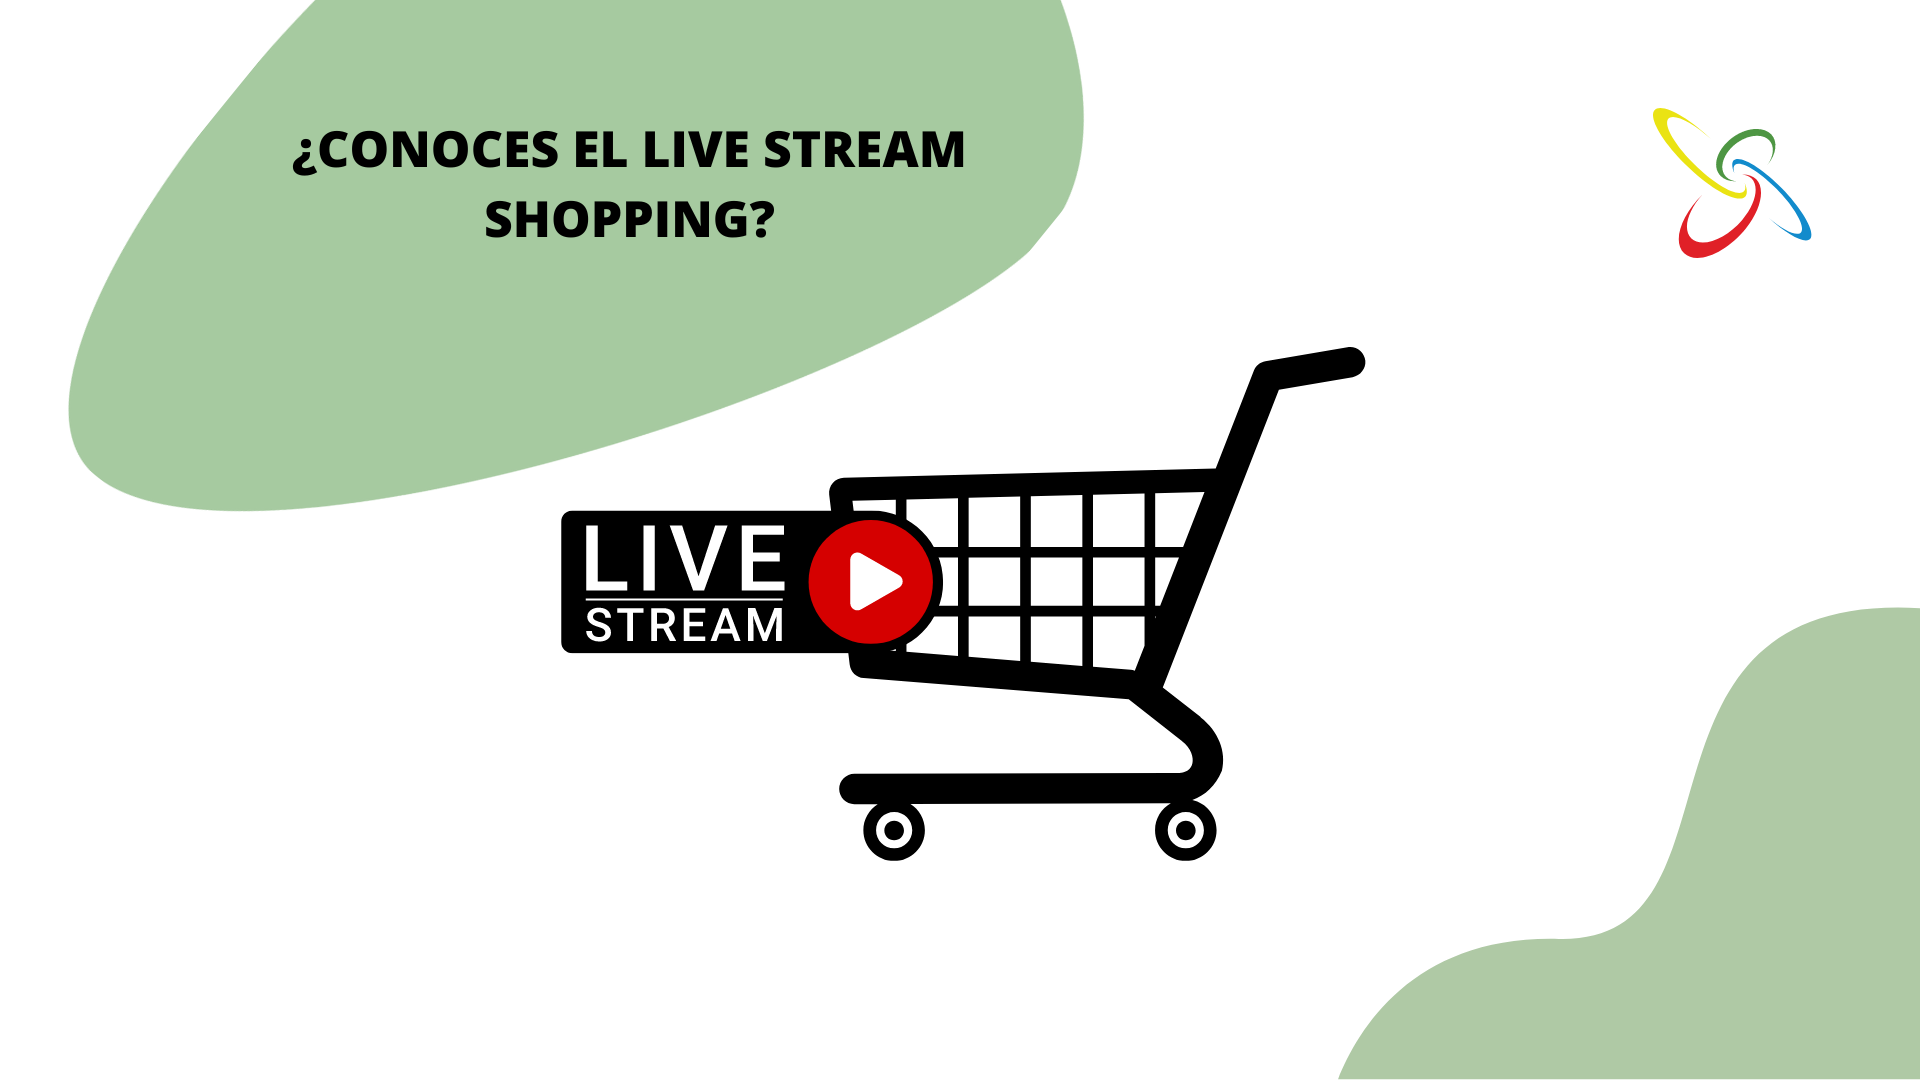 Coneixes el live stream shopping?